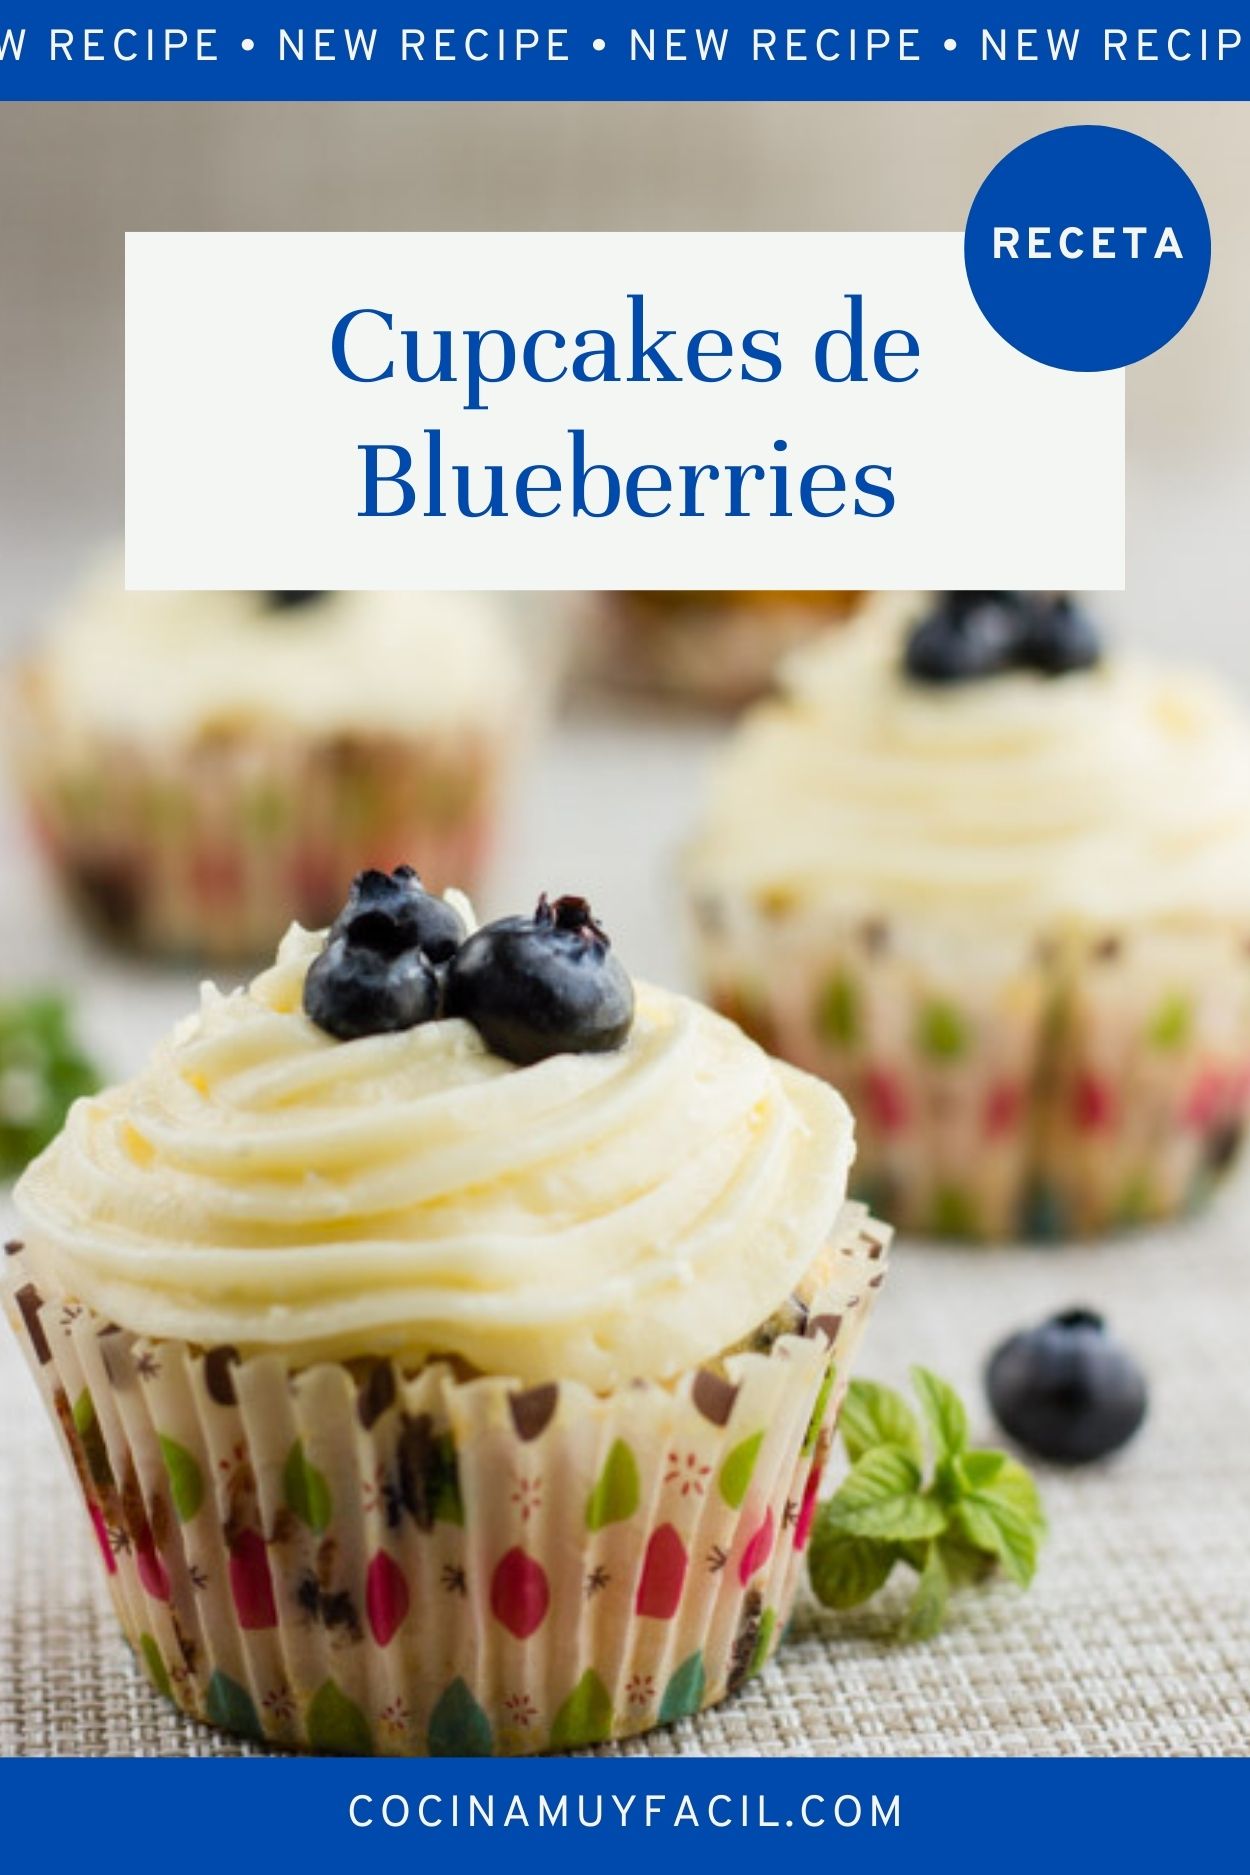 Cupcakes de arándanos azules (blueberries). Receta | cocinamuyfacil.com